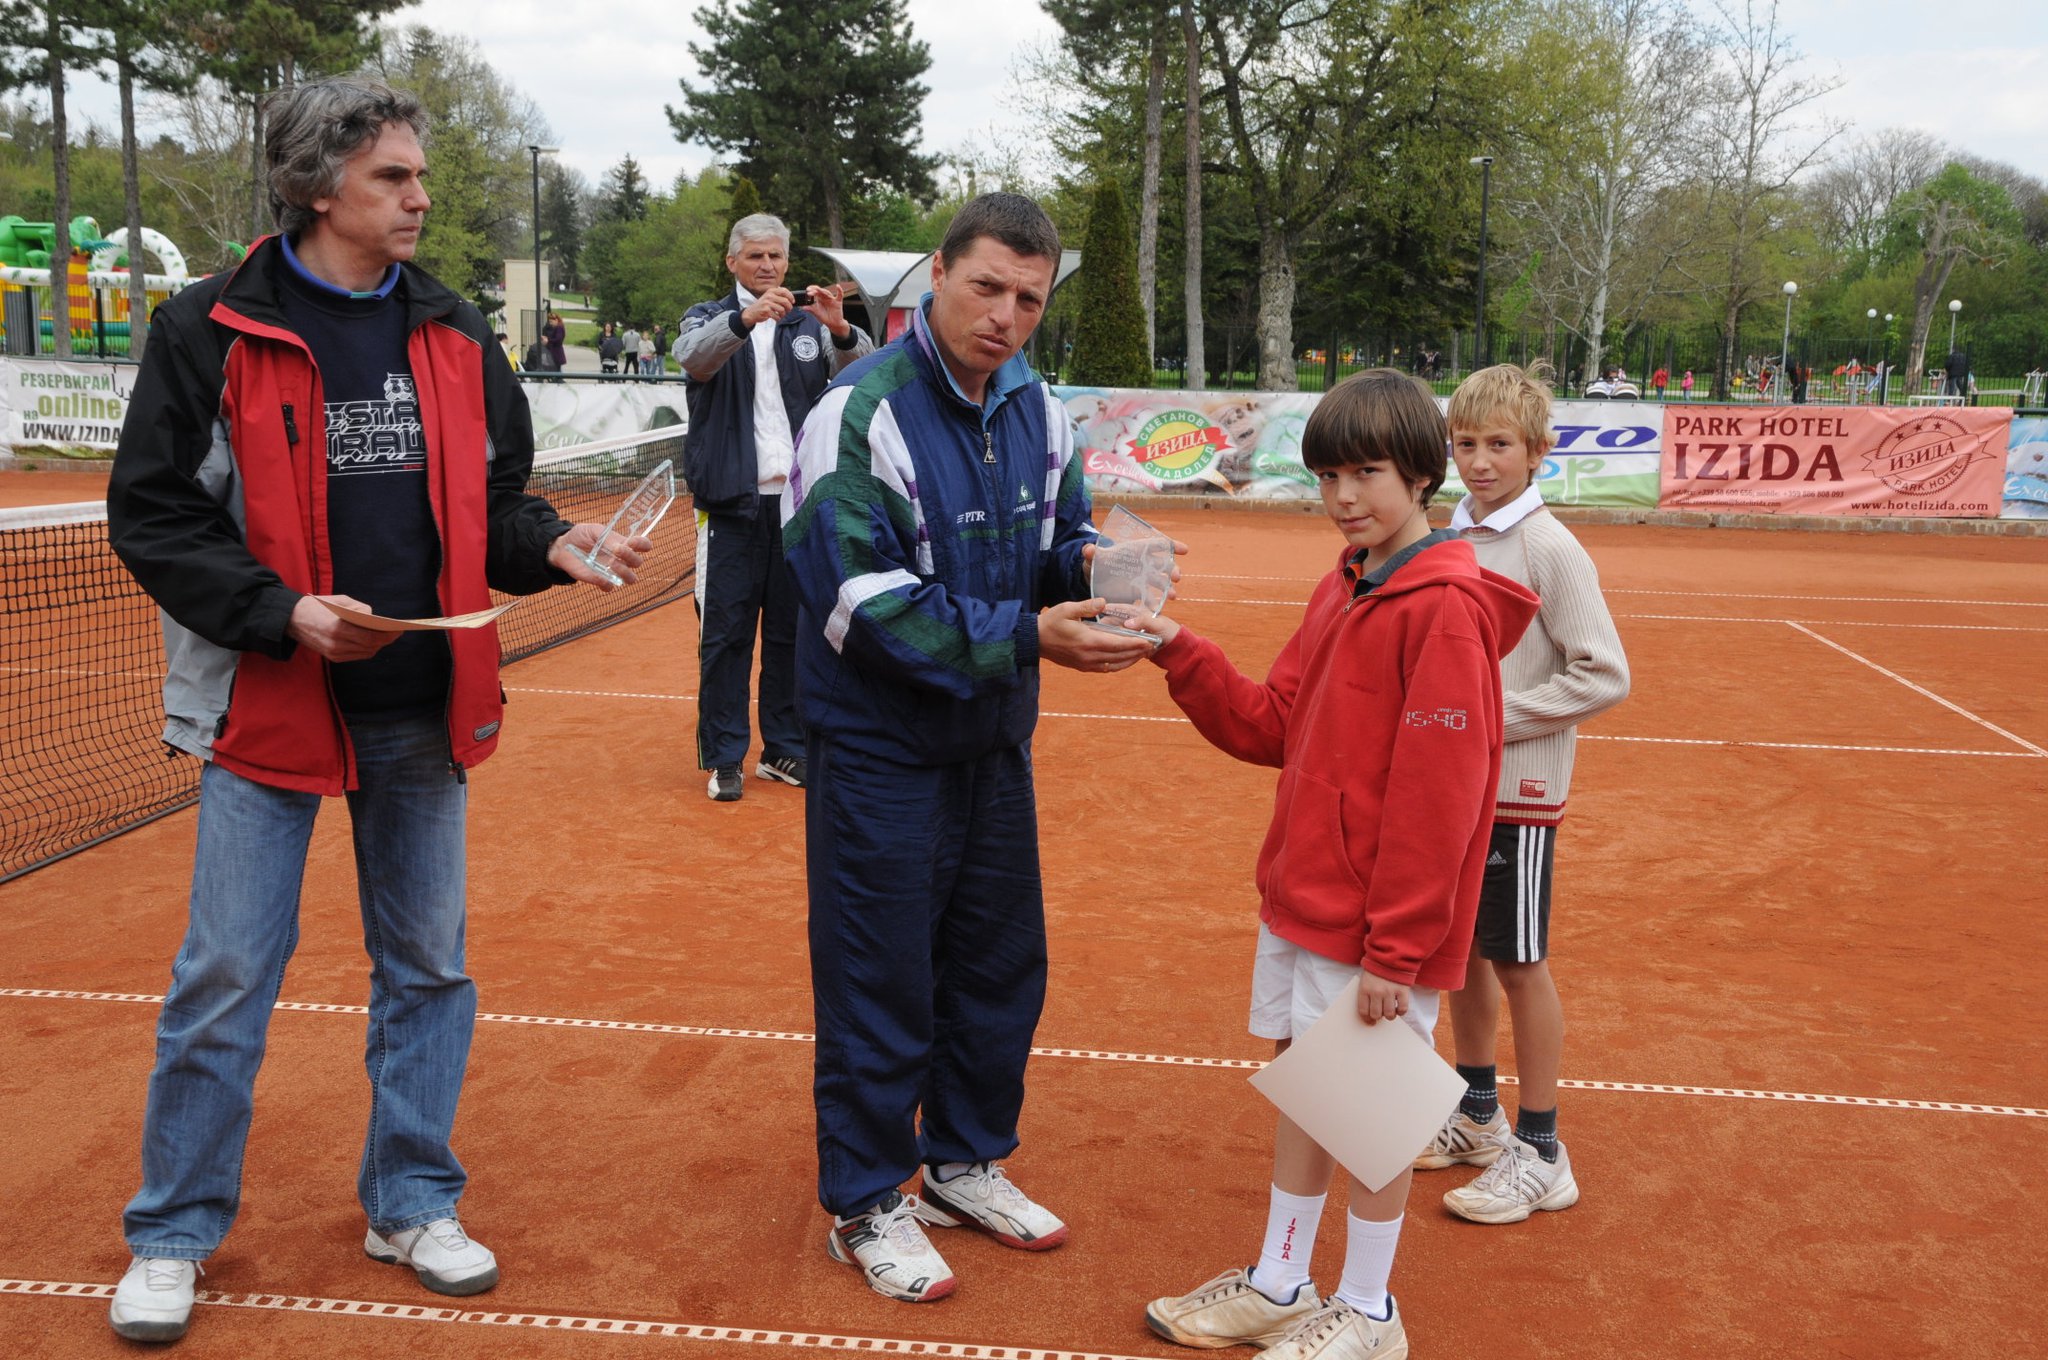 Българи триумфираха в международния турнир "Изида къп" (снимки)